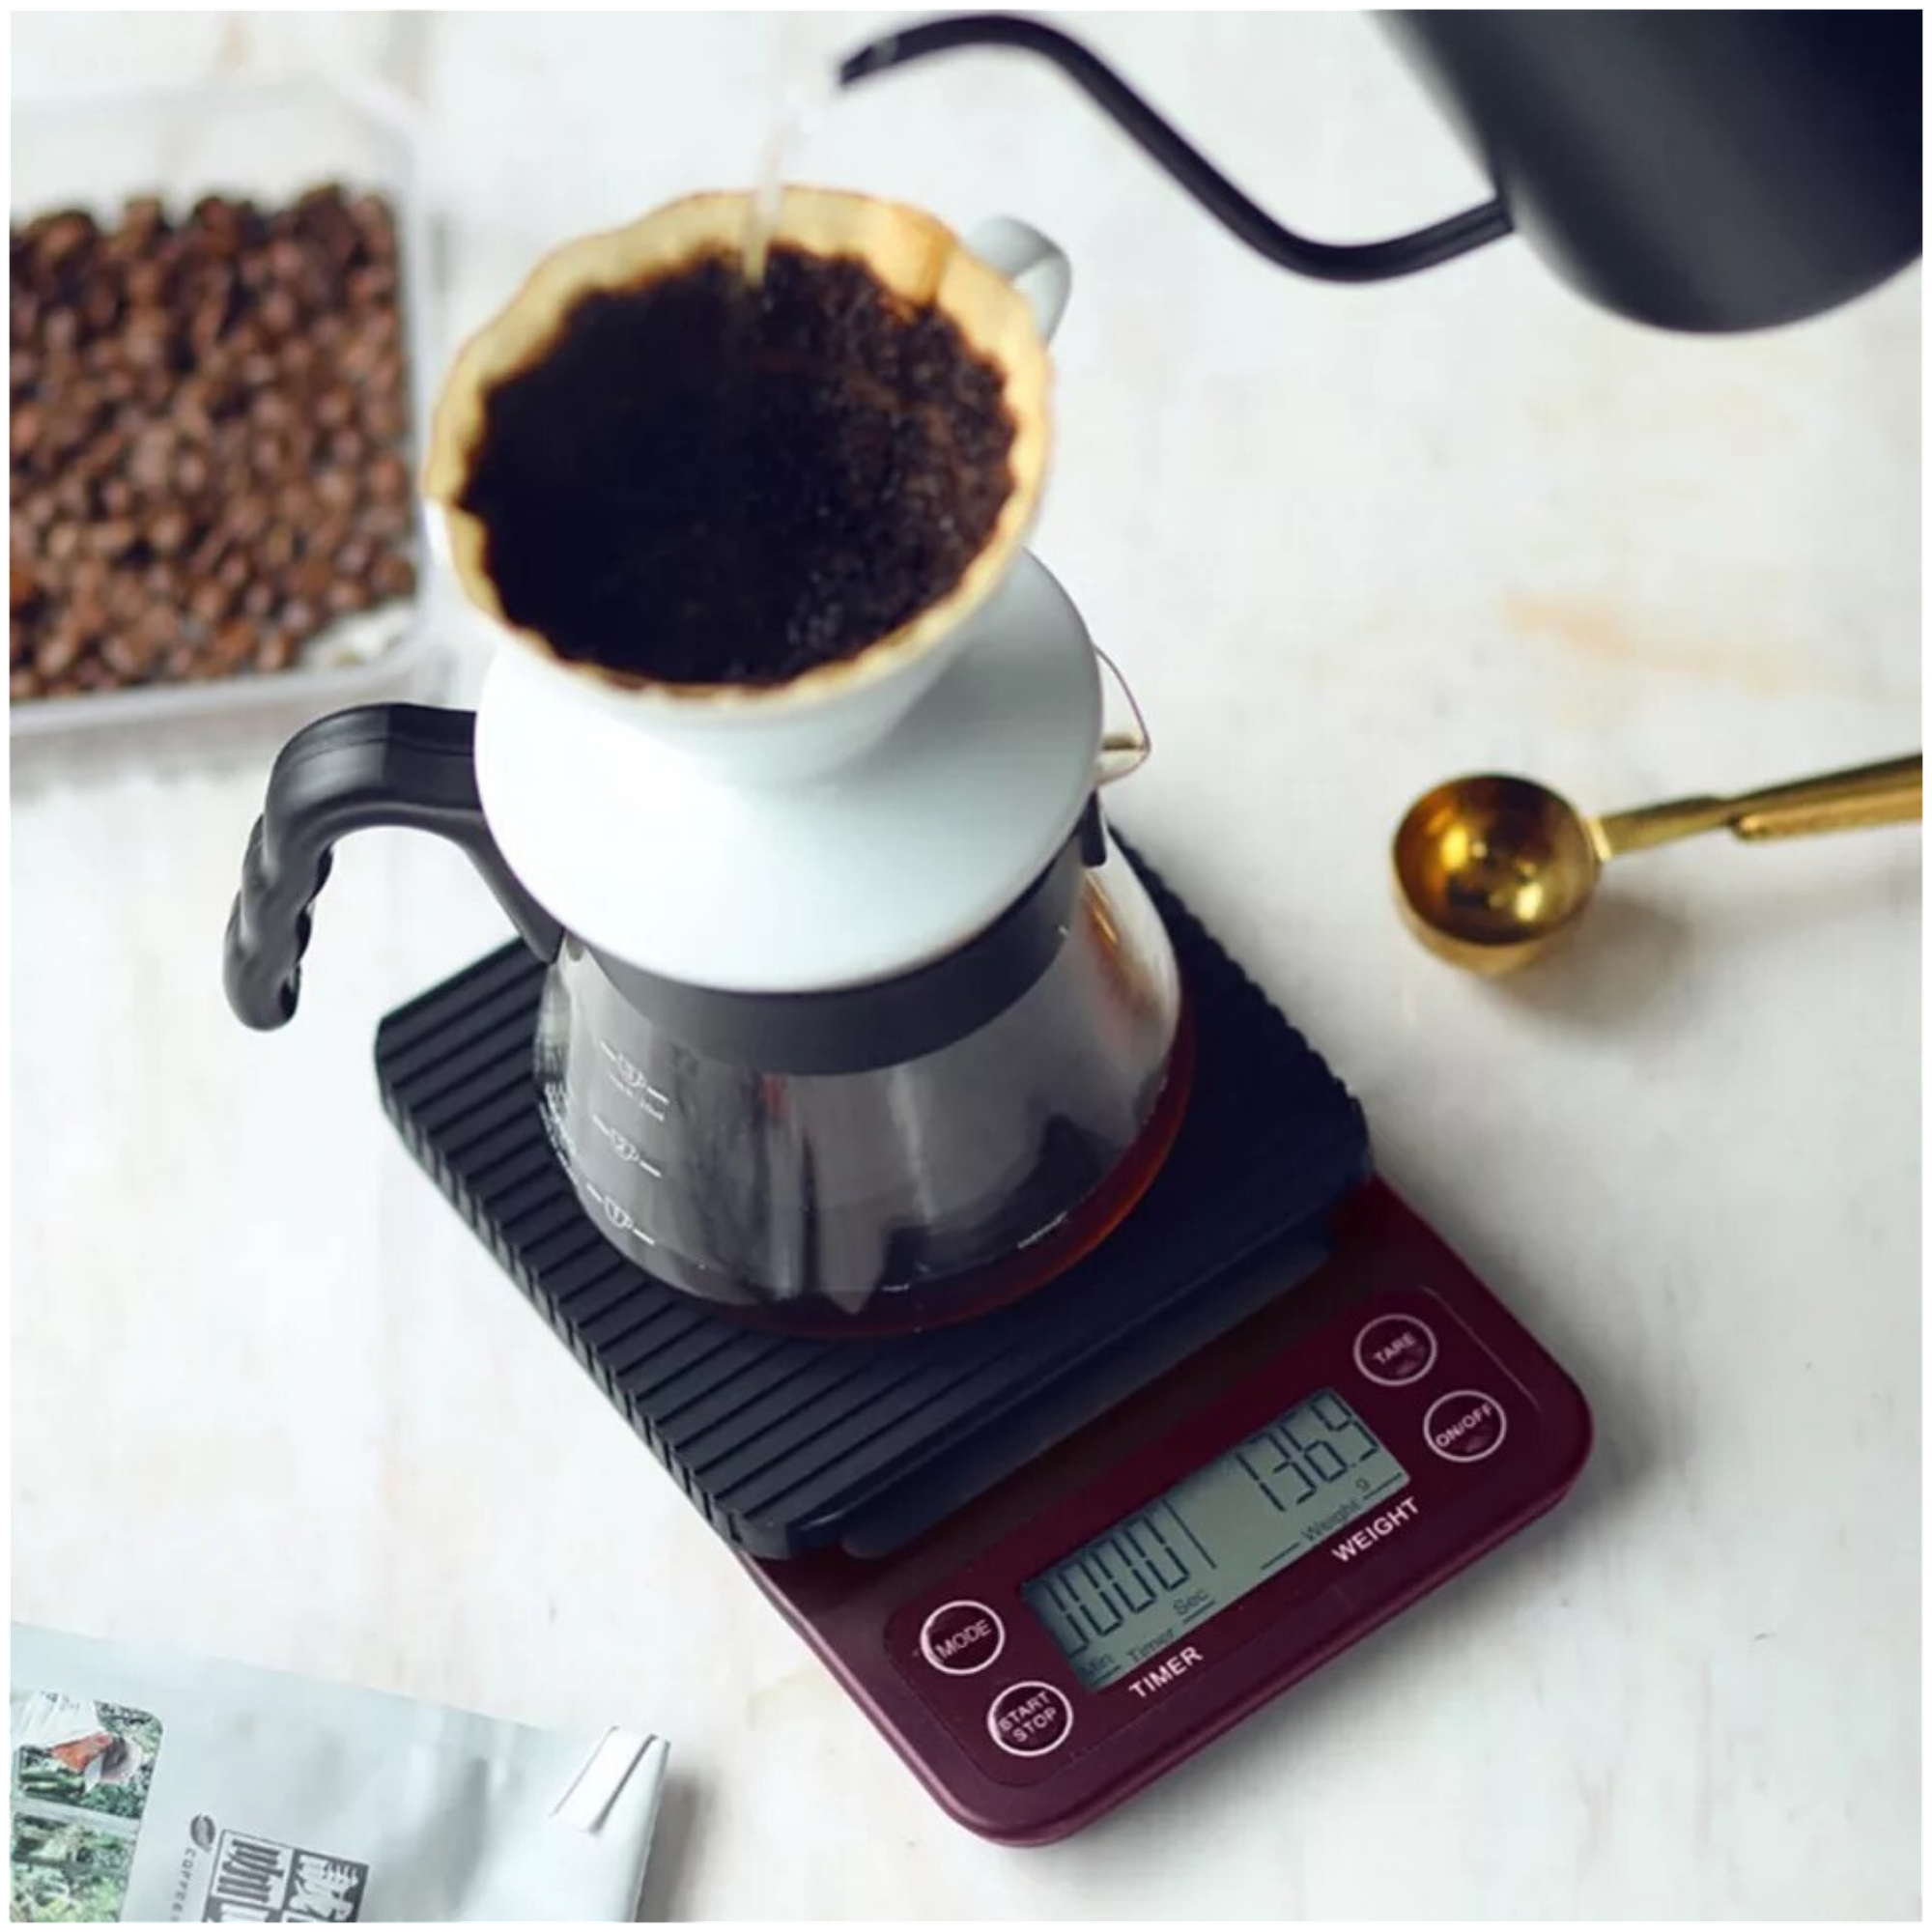 Электронные весы для кофе с таймером 5kg/0.1